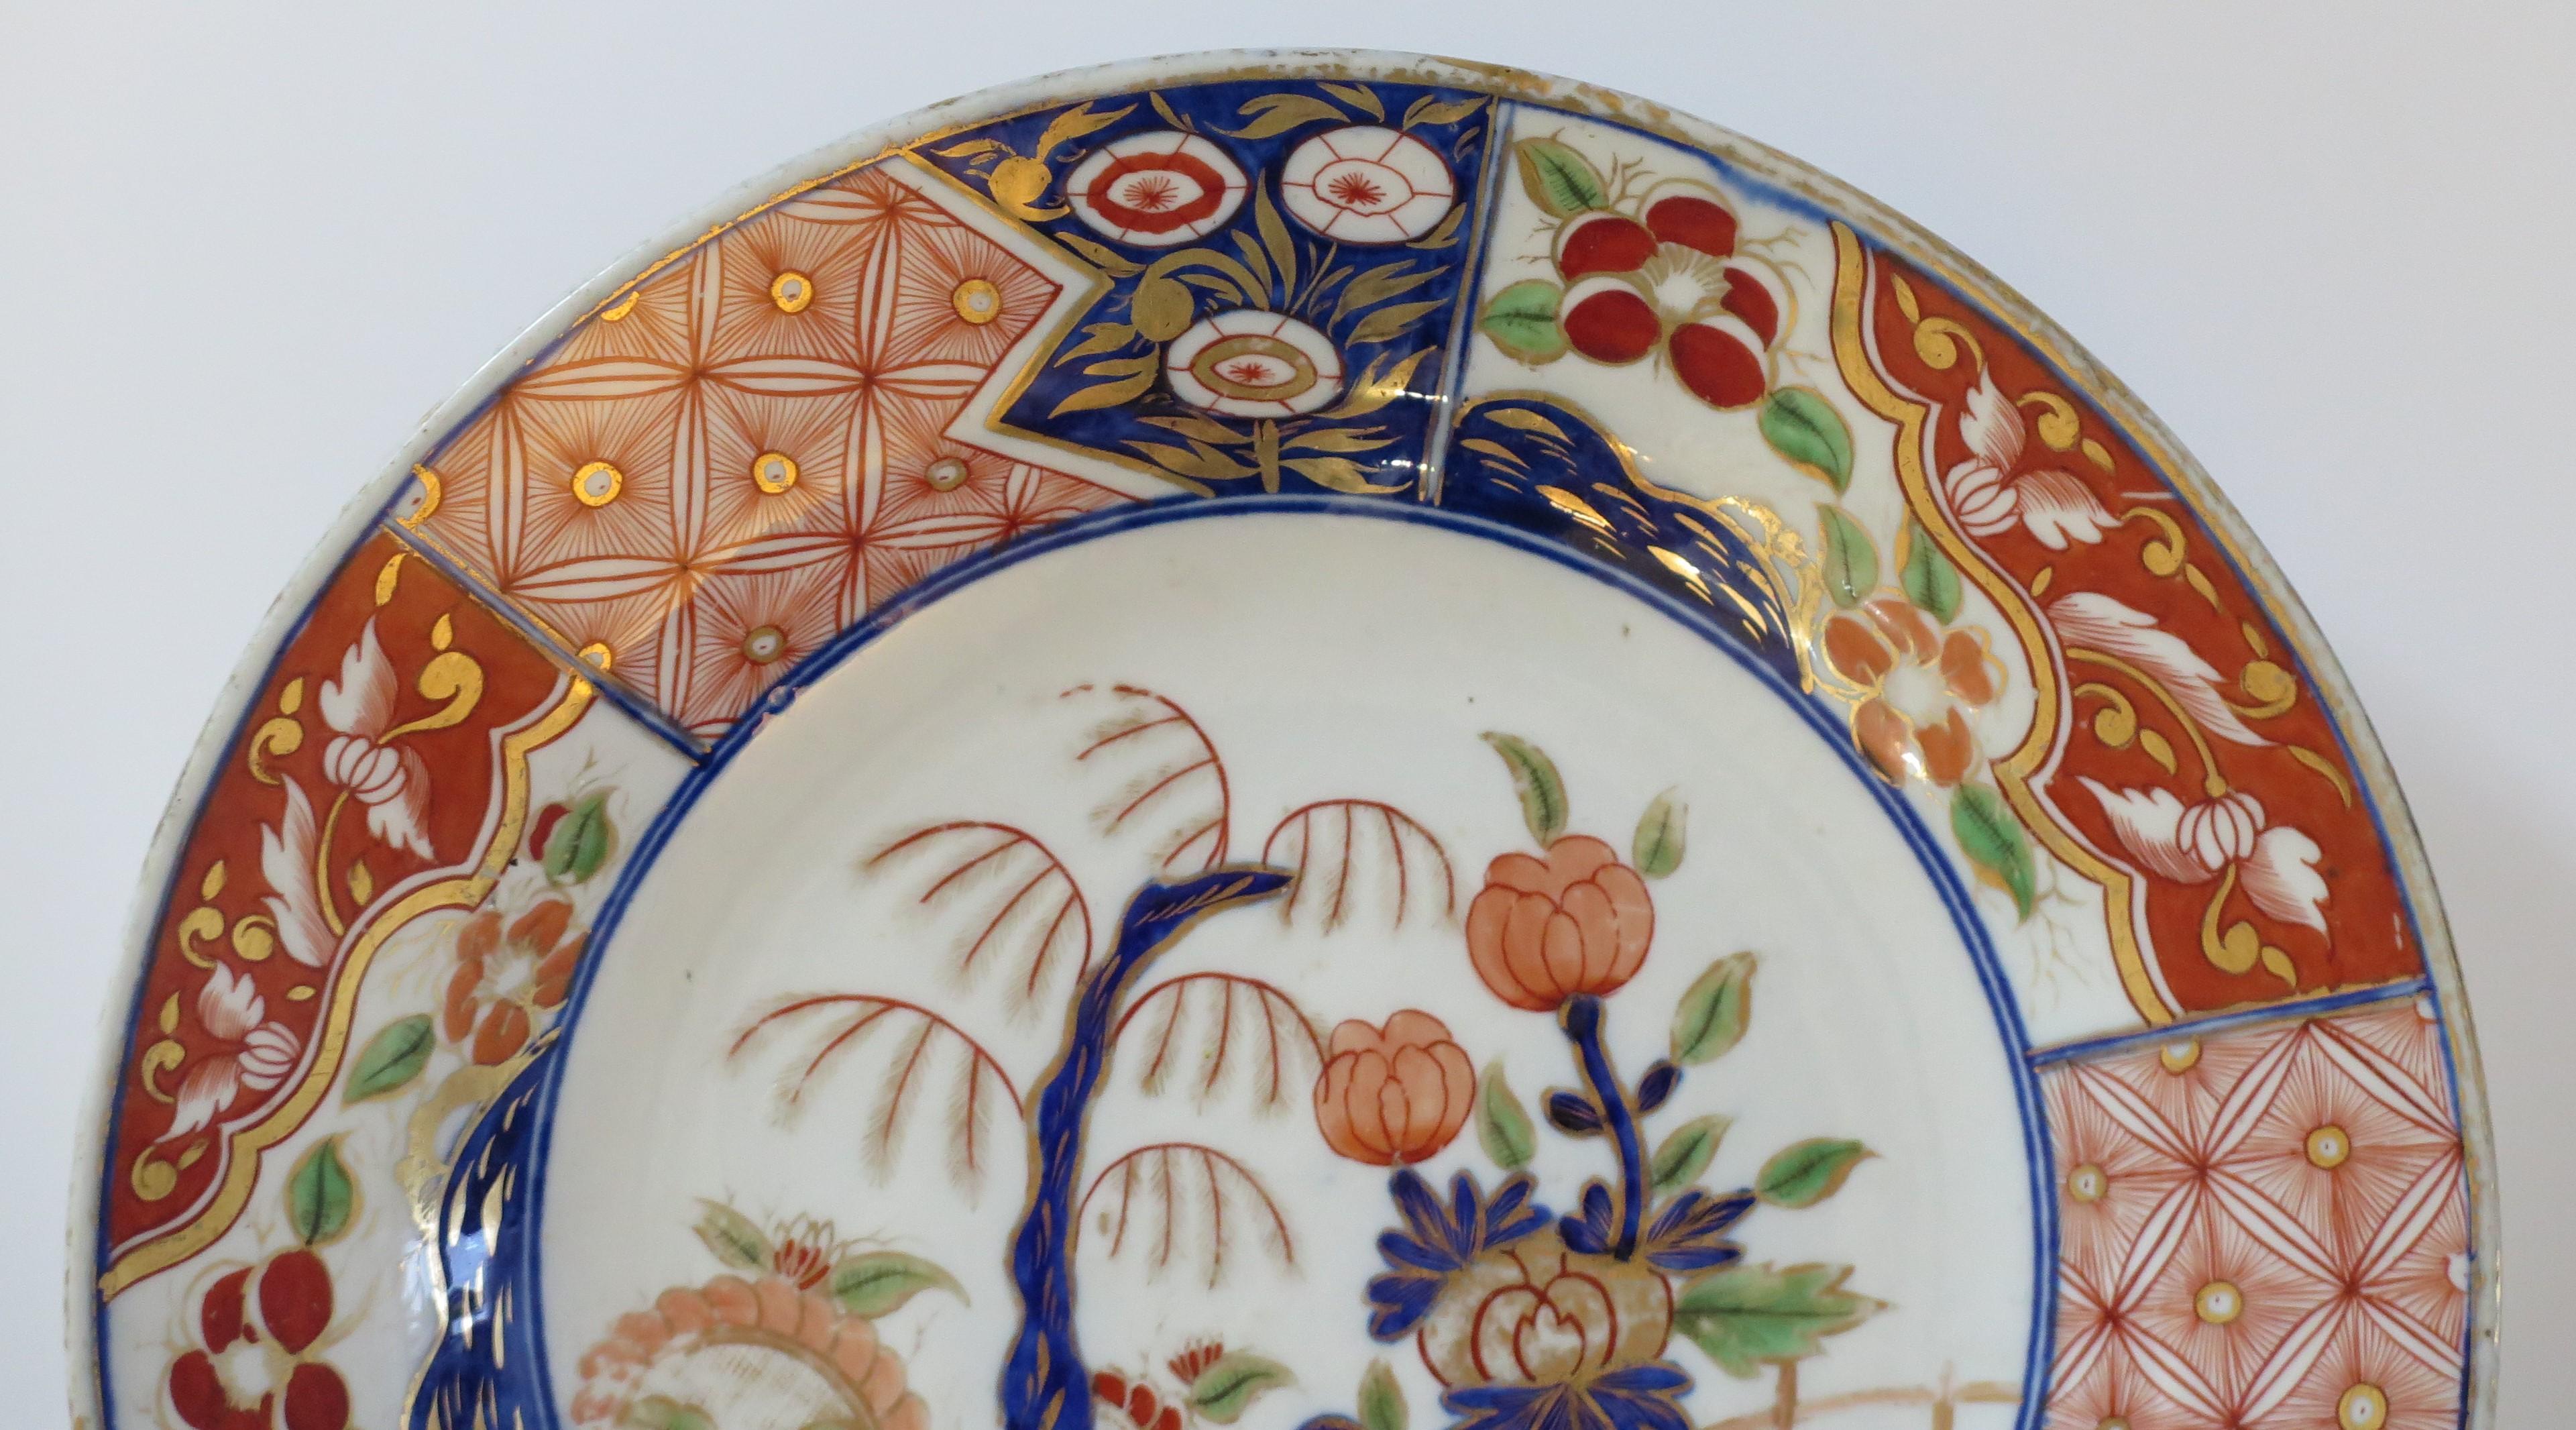 Dies ist ein japanischer Porzellanteller oder -teller von guter Qualität, den wir auf die Edo-Zeit um 1840 datieren. 

Der Teller ist wunderschön von Hand dekoriert mit verschiedenen Schattierungen von Unterglasur-Kobaltblau, dann von Hand